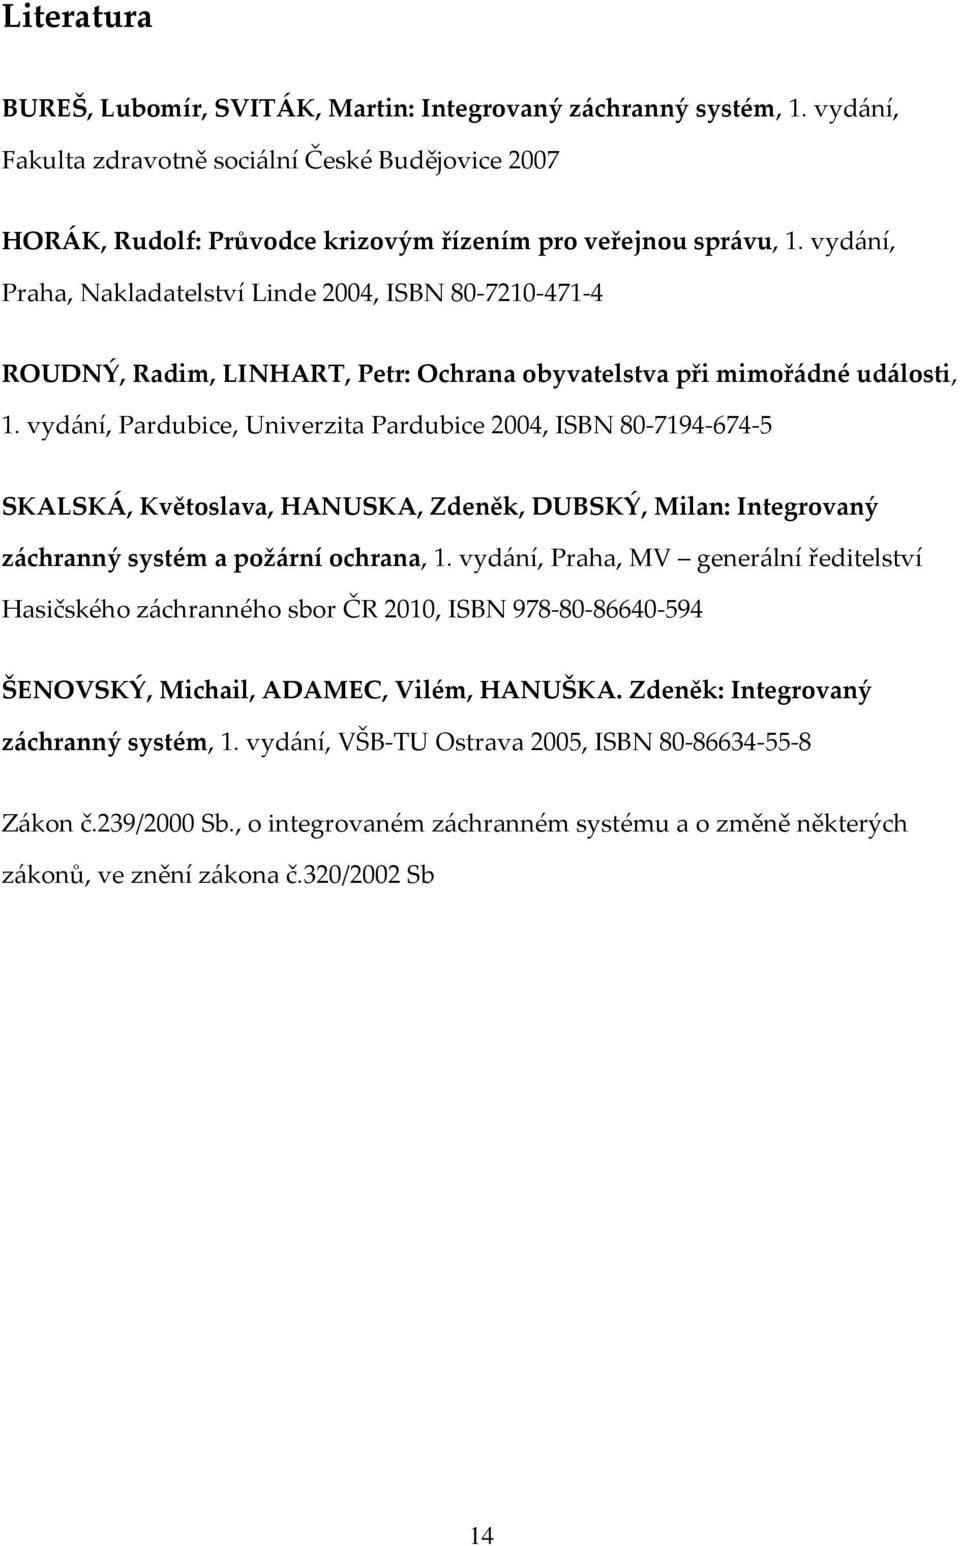 vydání, Pardubice, Univerzita Pardubice 2004, ISBN 80-7194-674-5 SKALSKÁ, Květoslava, HANUSKA, Zdeněk, DUBSKÝ, Milan: Integrovaný záchranný systém a požární ochrana, 1.